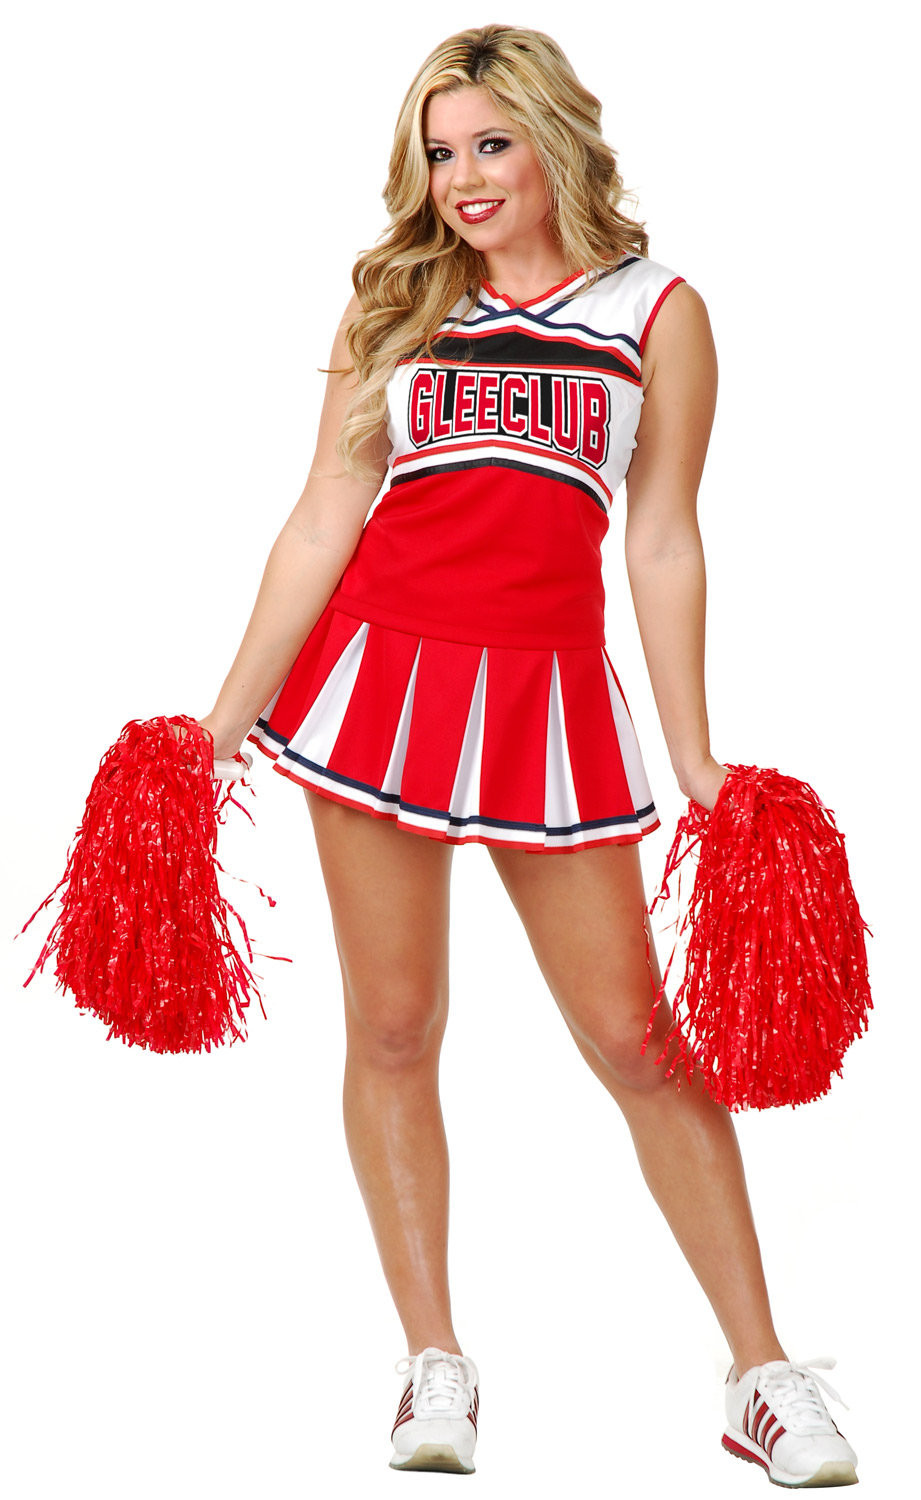 Cheerleader Costumes DIY
 y Glee Club Cheerleader Costume Mr Costumes